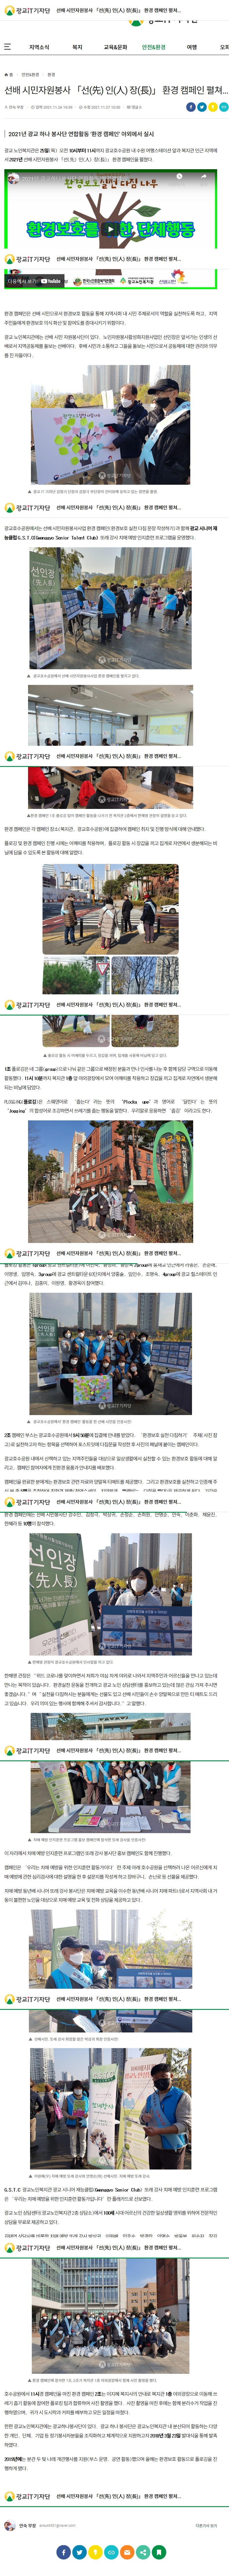 선배 시민자원봉사 「선(先) 인(人) 장(長)」 환경 캠페인 펼쳐....jpg